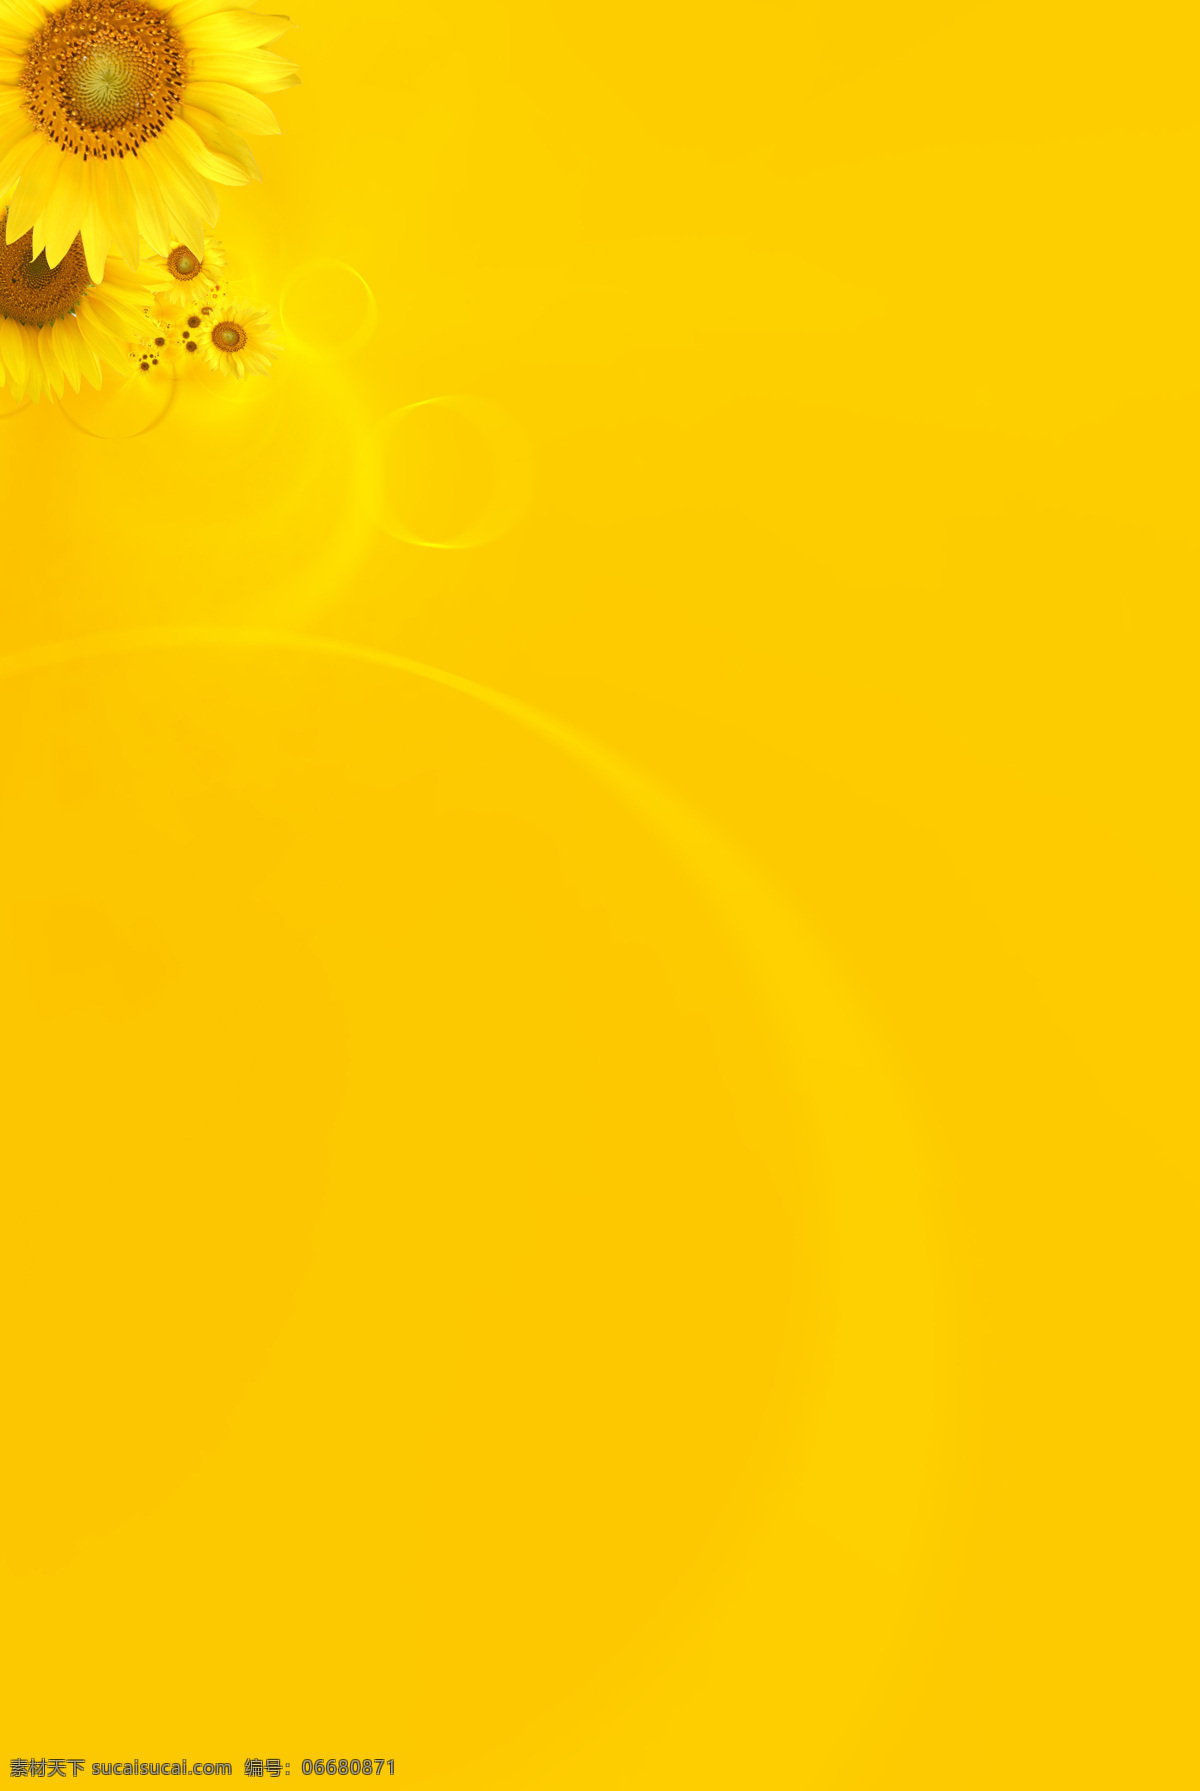 黄色背景图 黄色背景 背景图片 向日葵背景 黄色 底纹边框 背景底纹